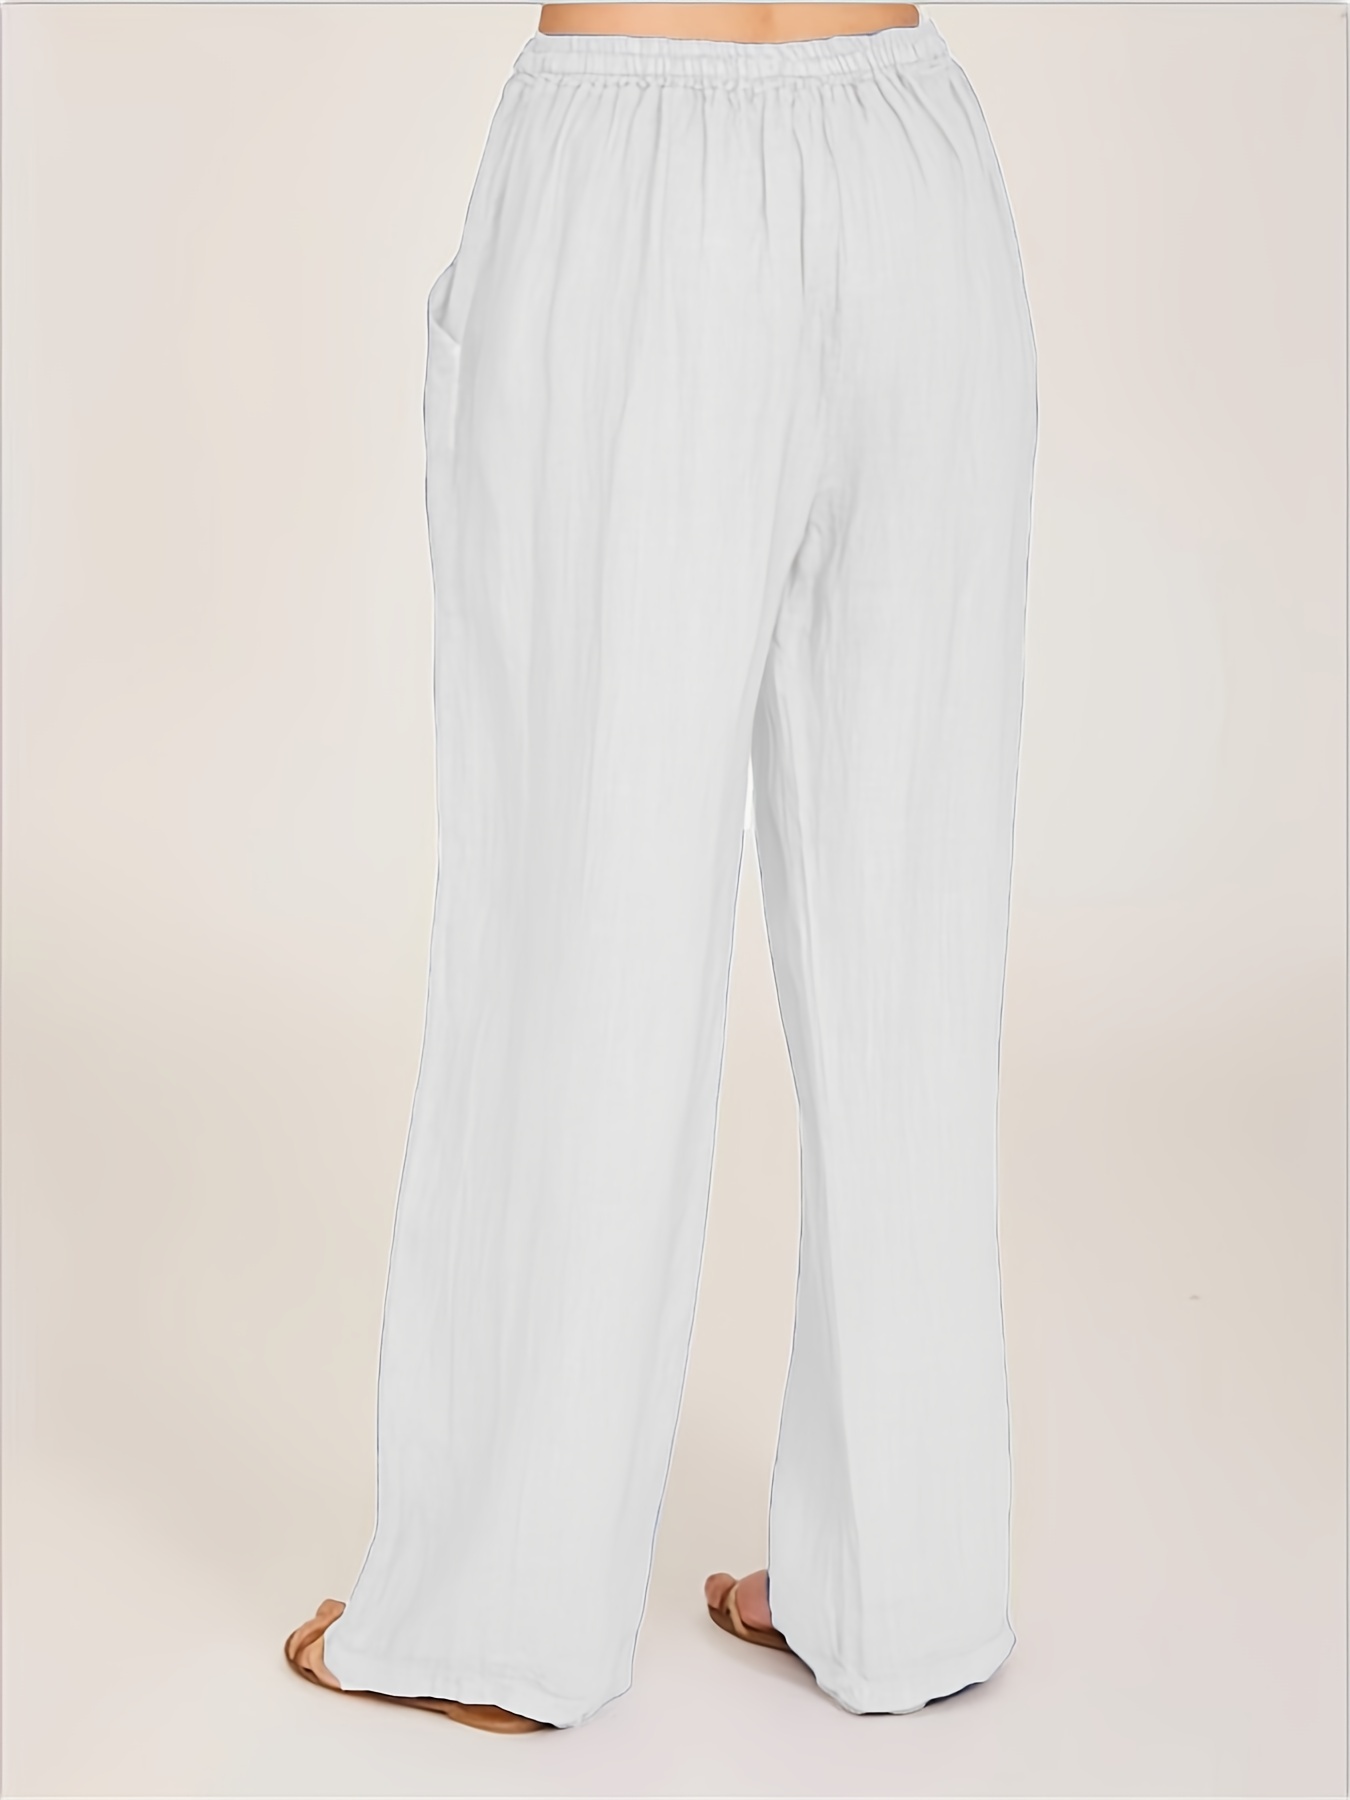 Palazzo Pants Women, White Cotton Gauze Pants, Tall Pants Women, Plus Size  Pants, Wide Leg Trousers -  Canada